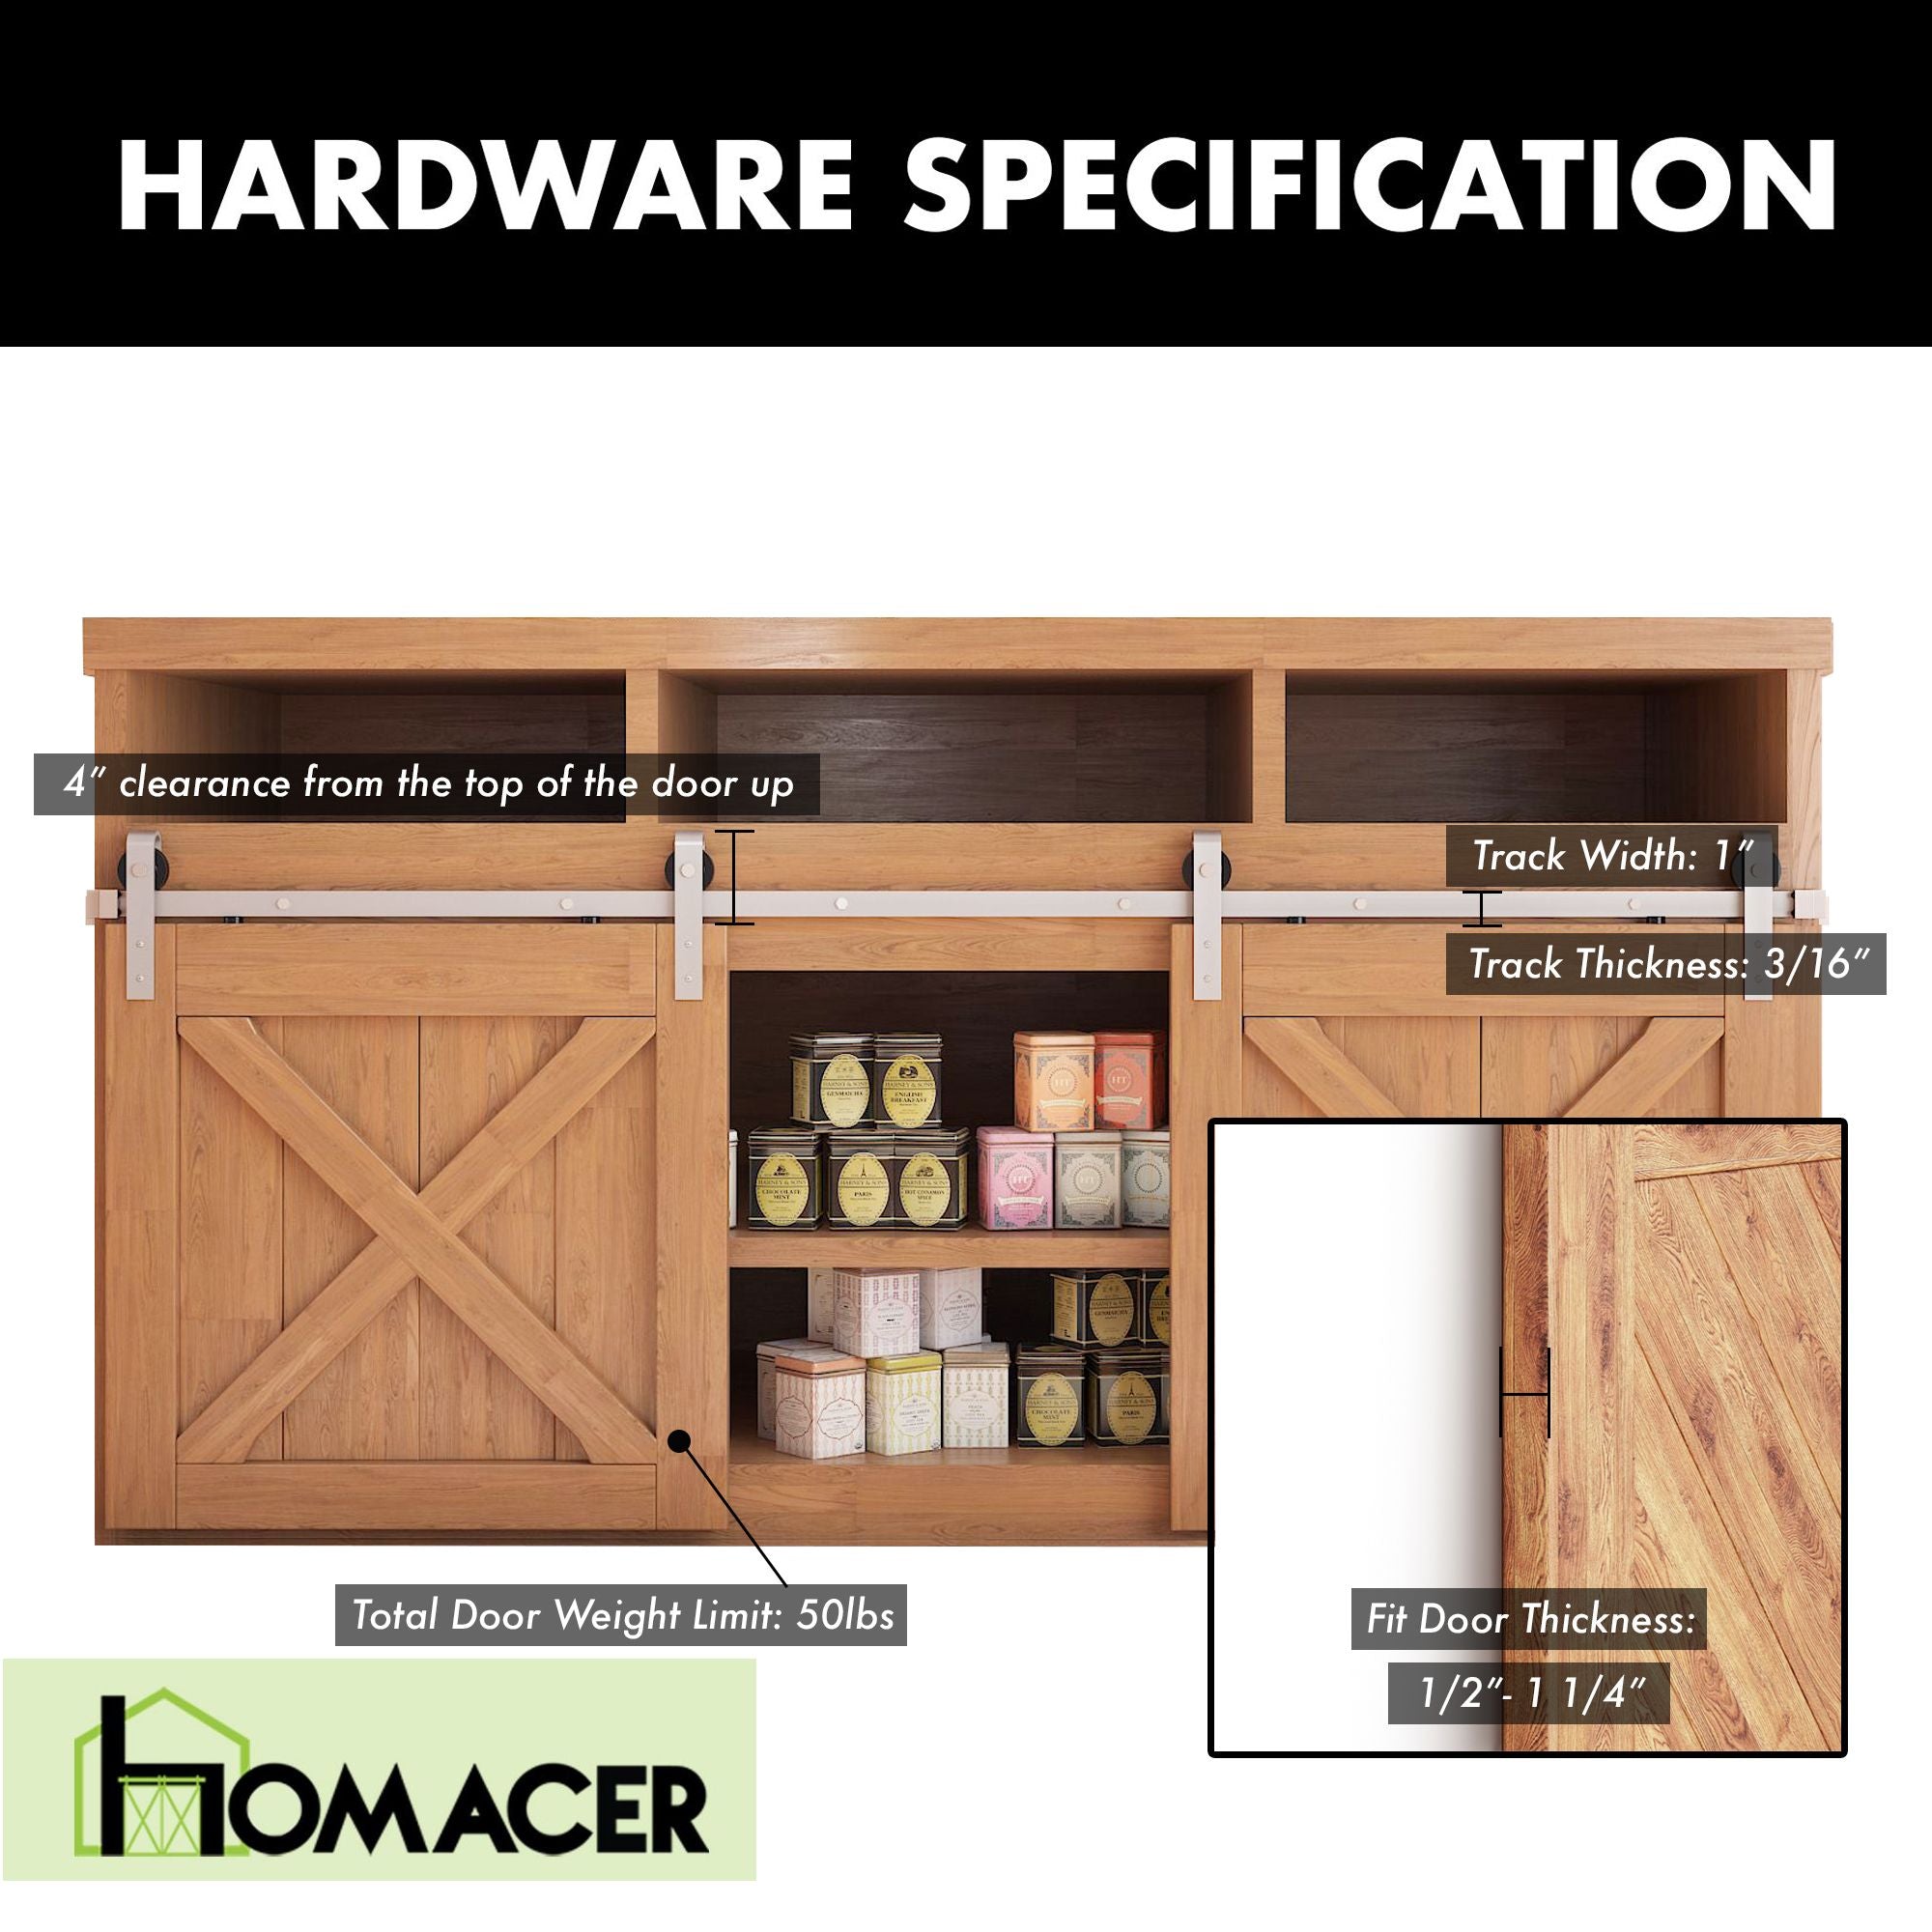 Homacer mini sliding door track barn hardware kit